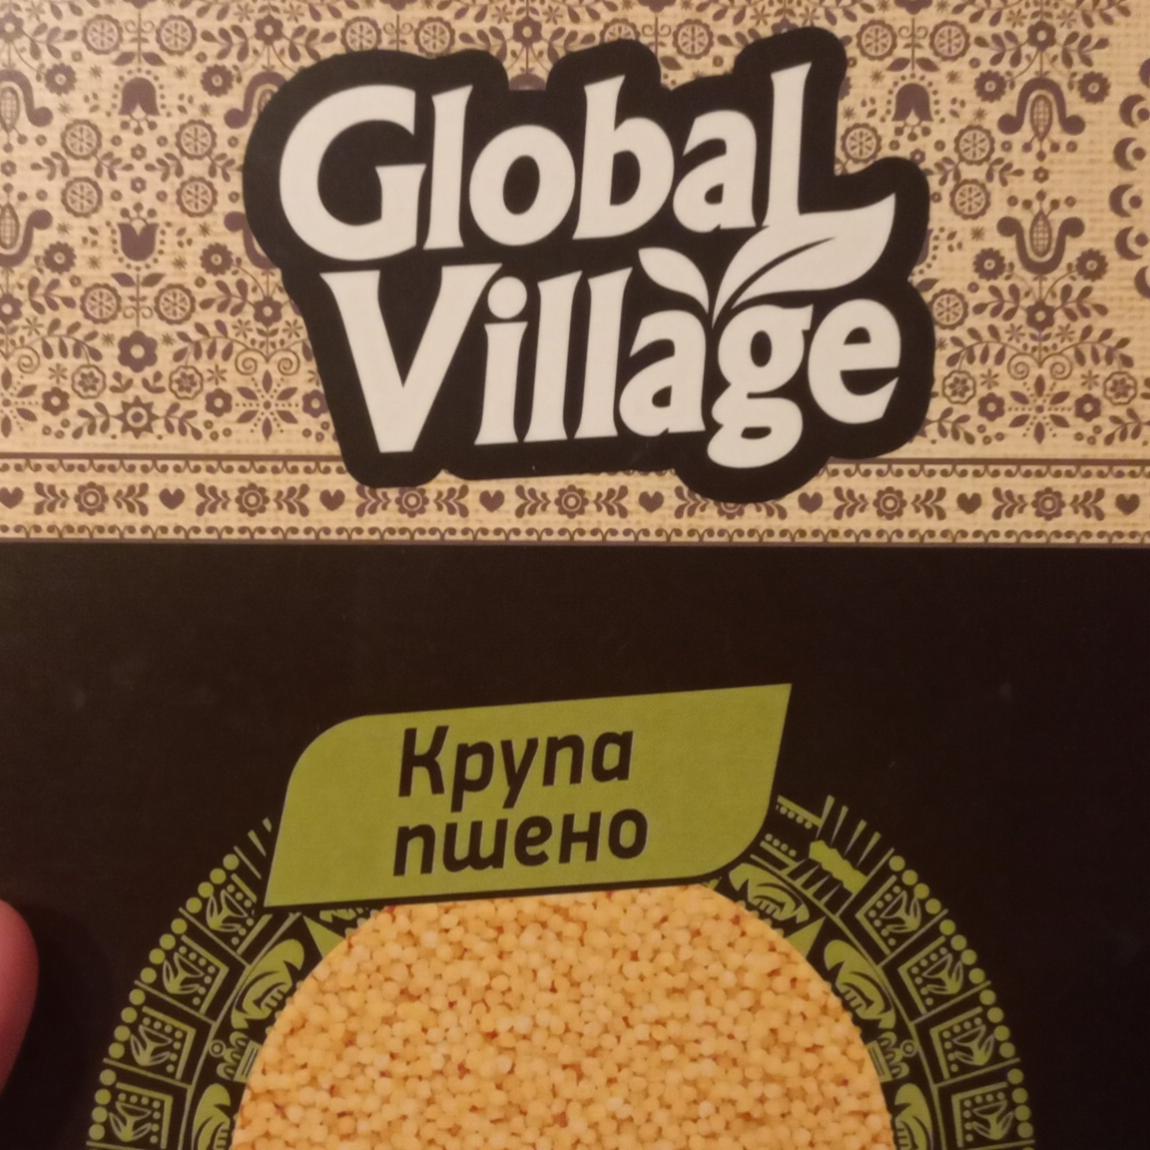 Фото - пшено в пакетиках Global Village